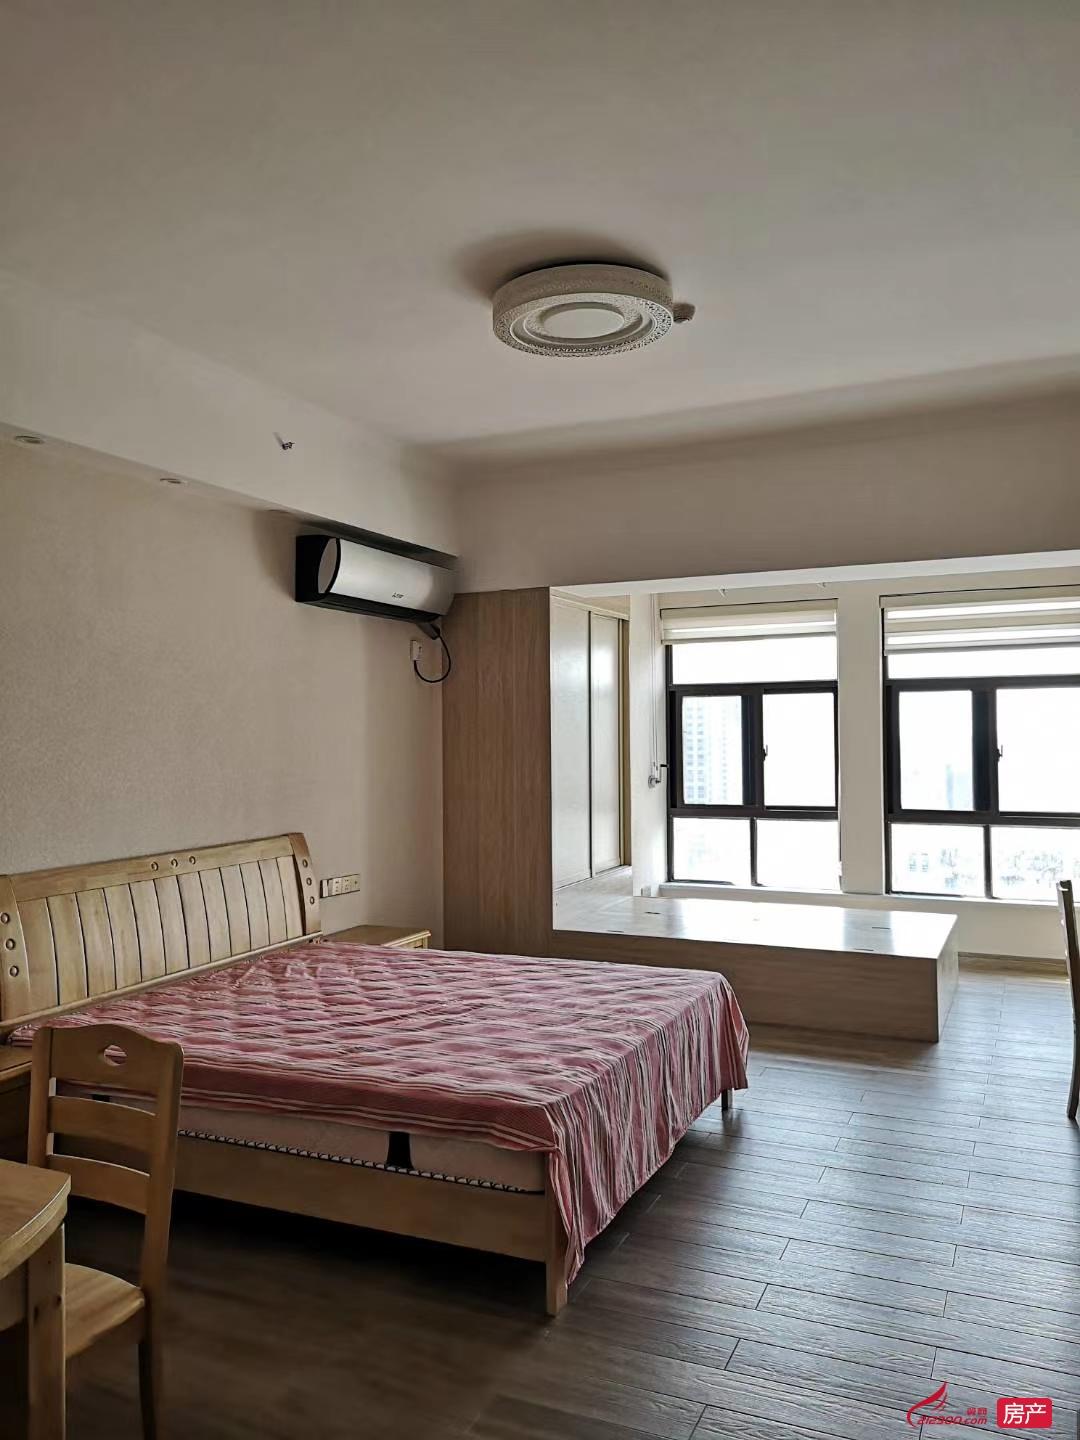 出租华都锦城公寓 1室1厅1卫58平米精装设全1800元/月住宅